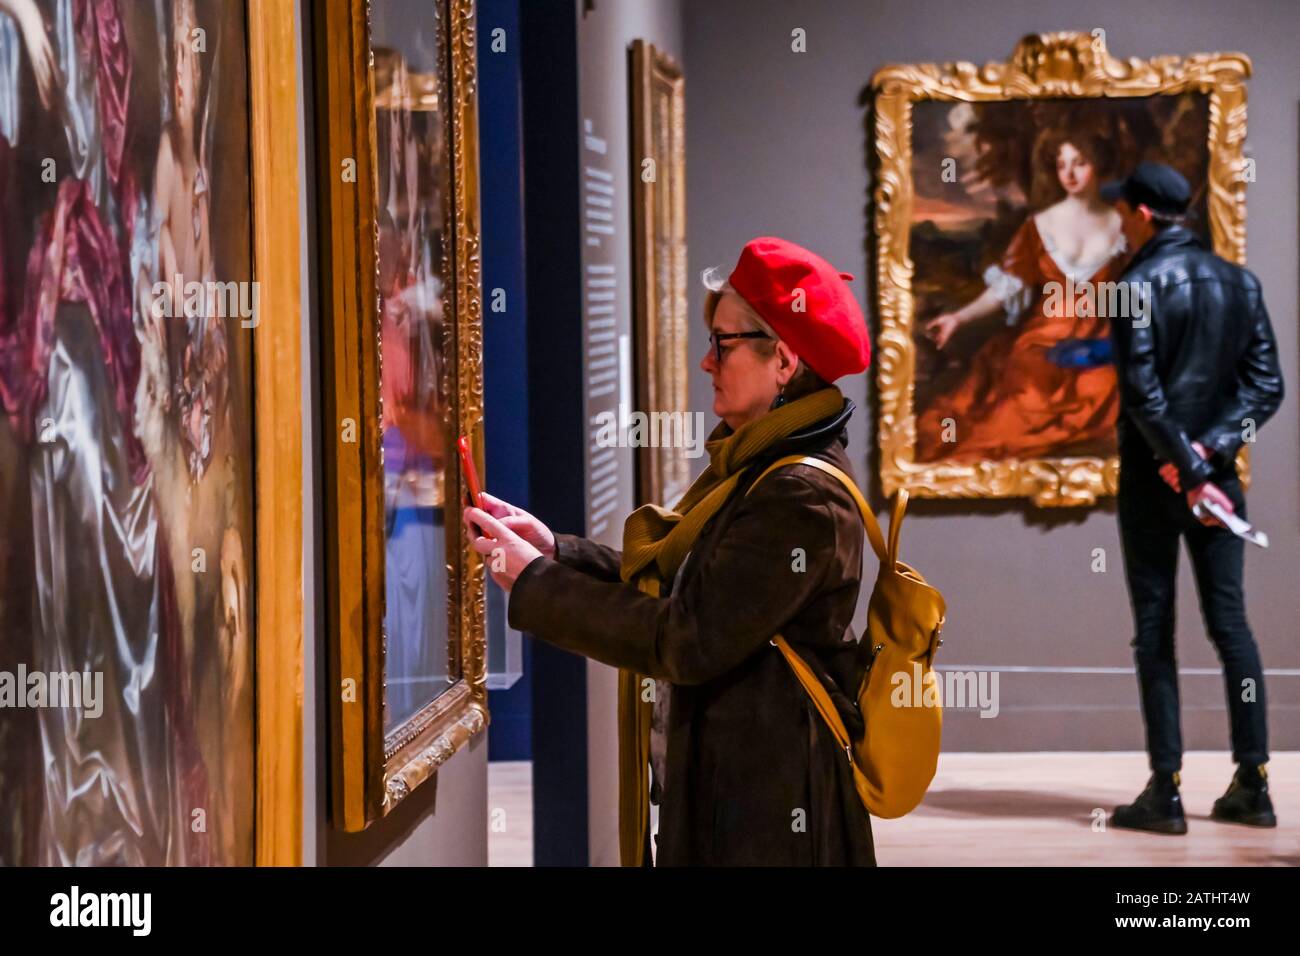 Londres, Royaume-Uni. 3 février 2020. Tate Britain ouvre une nouvelle exposition baroque britannique : puissance et Illusion. De la restauration de Charles II en 1660 à la mort de la reine Anne en 1714, l'exposition explore les liens entre l'art et le pouvoir à cette époque. Crédit: Guy Bell/Alay Live News Banque D'Images